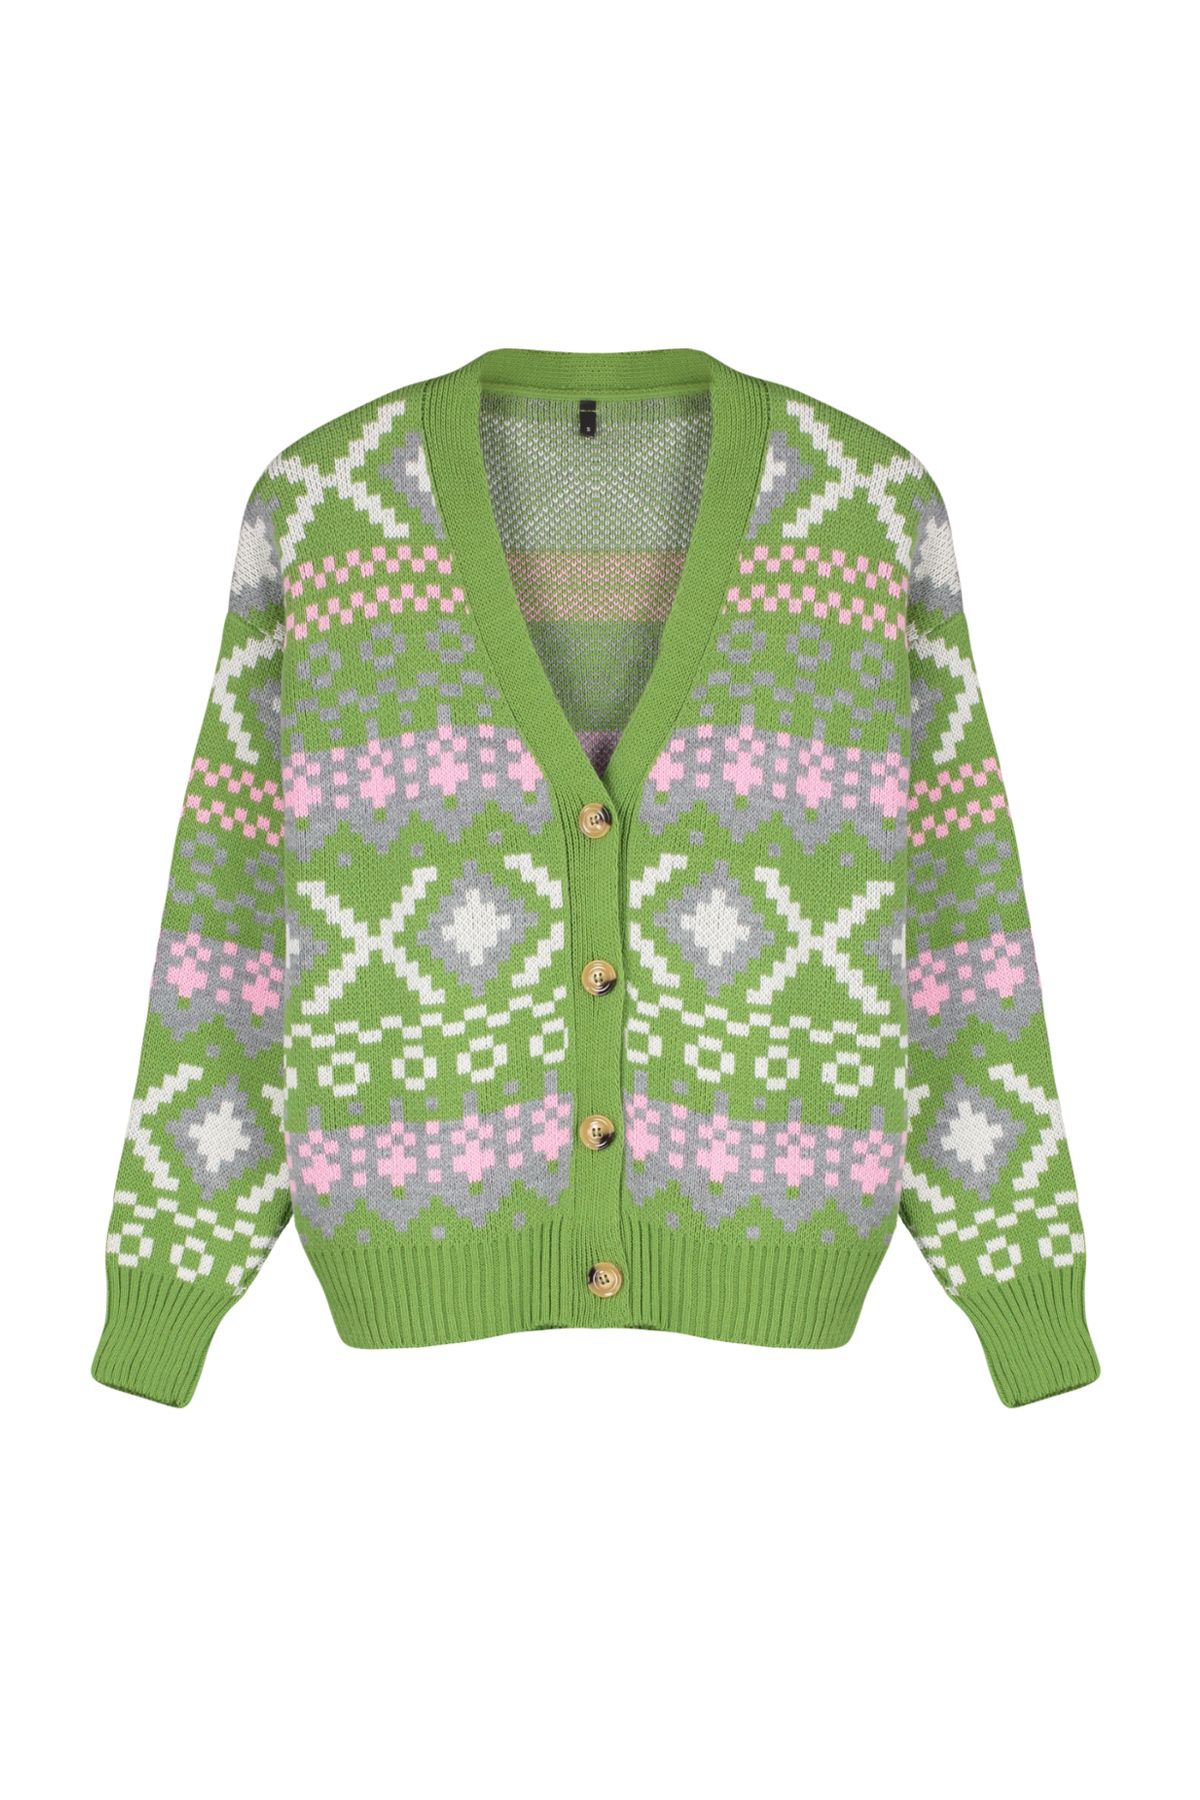 Trendyol Lime Patterned Knitwear Cardigan